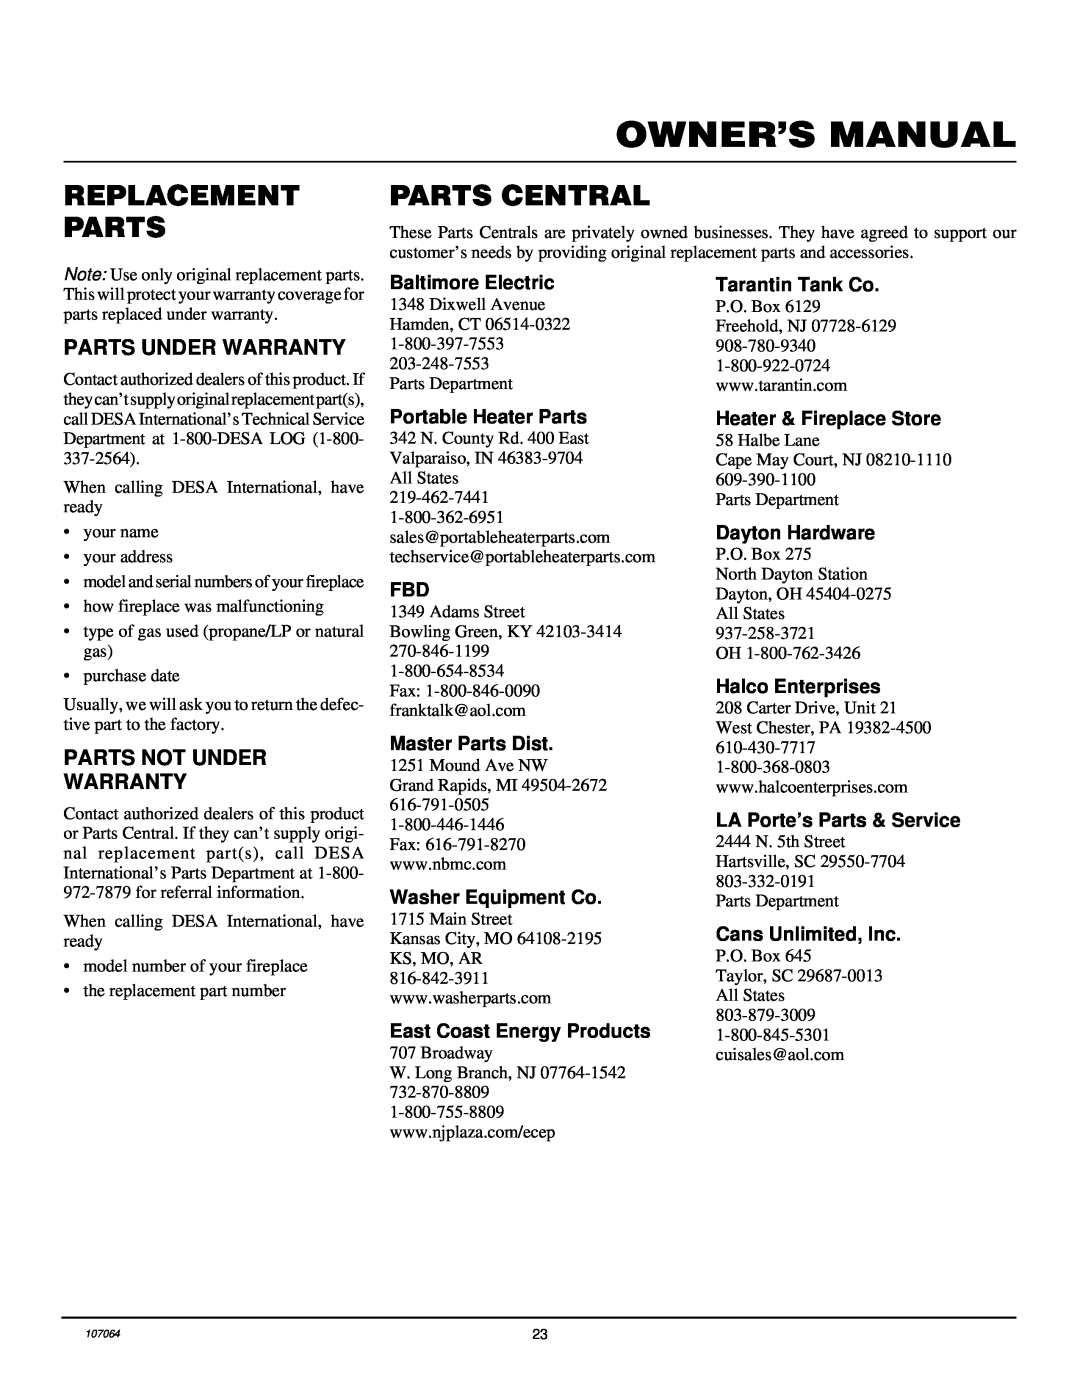 Desa LFP33PRA Replacement Parts, Parts Central, Parts Under Warranty, Parts Not Under Warranty, Baltimore Electric 